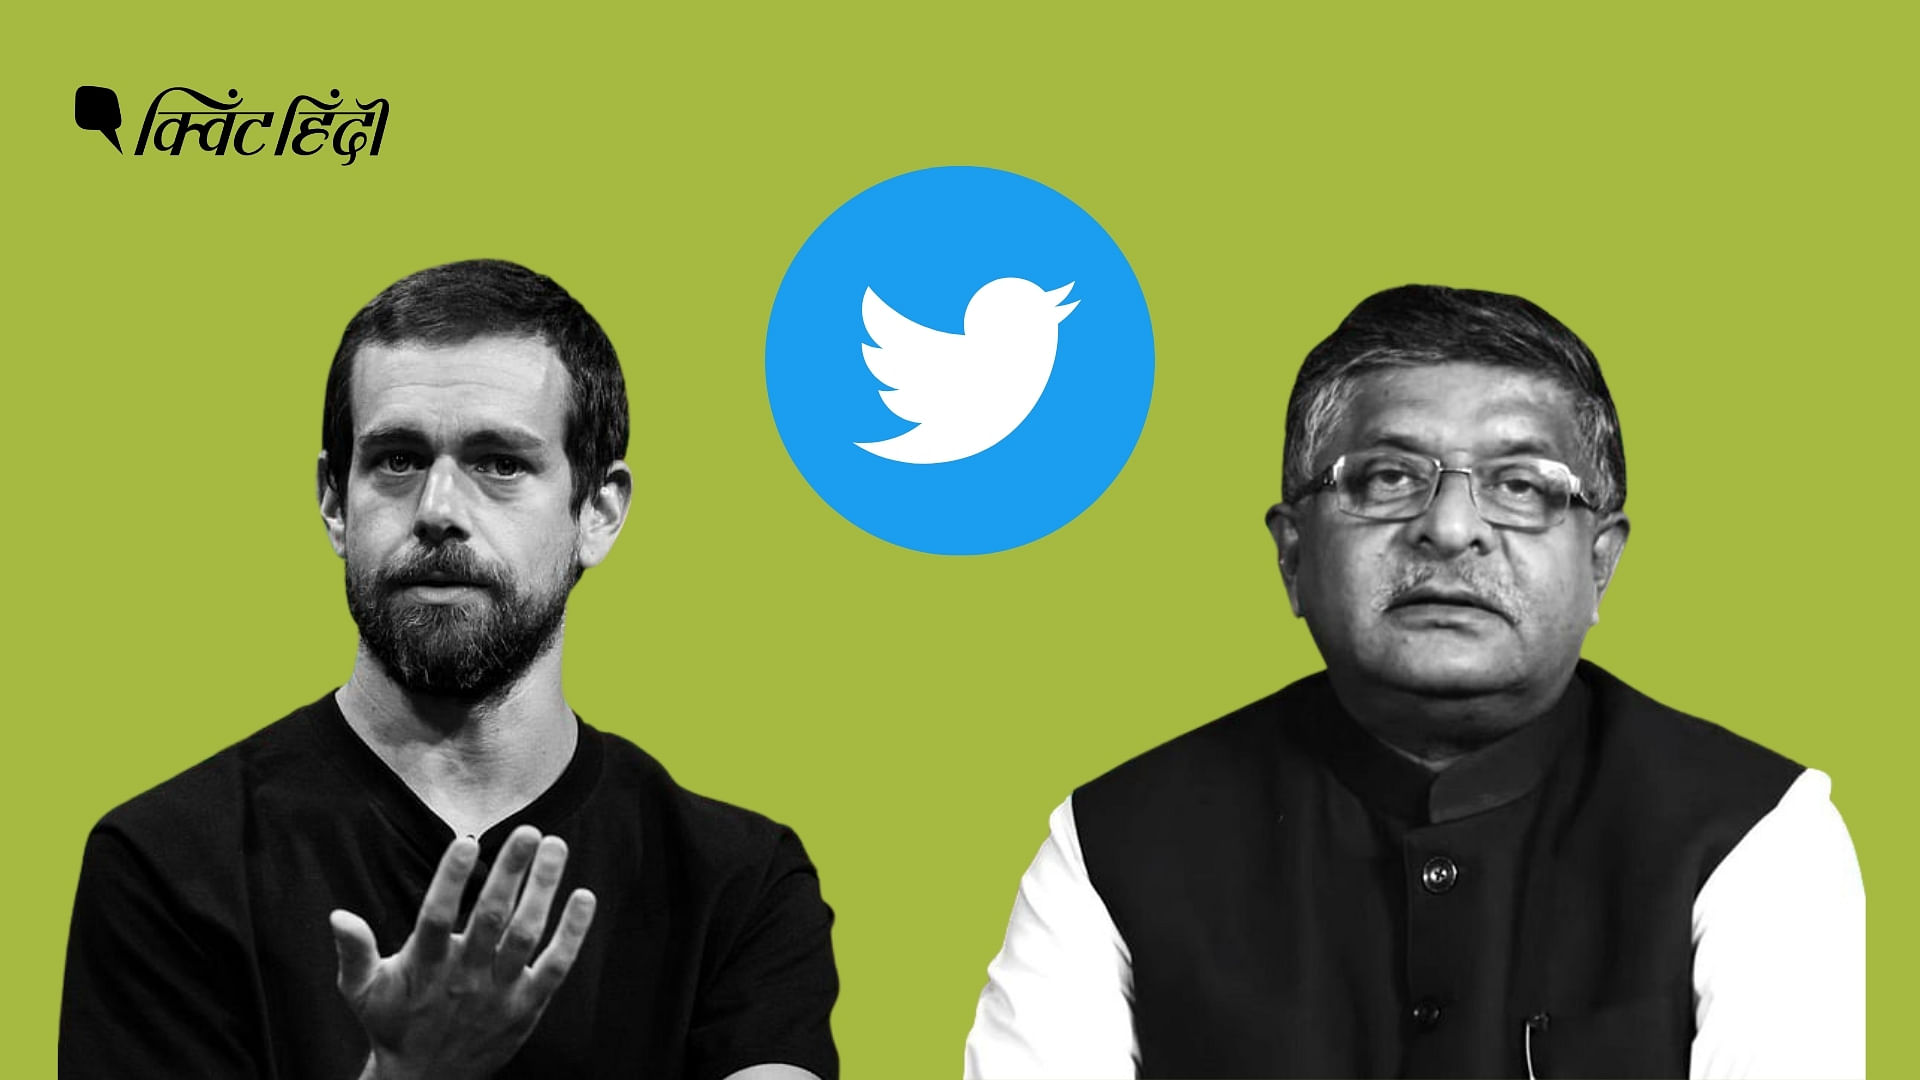 ट्विटर अकाउंट्स हटाने को लेकर भारत सरकार बनाम ट्विटर का विवाद जारी है